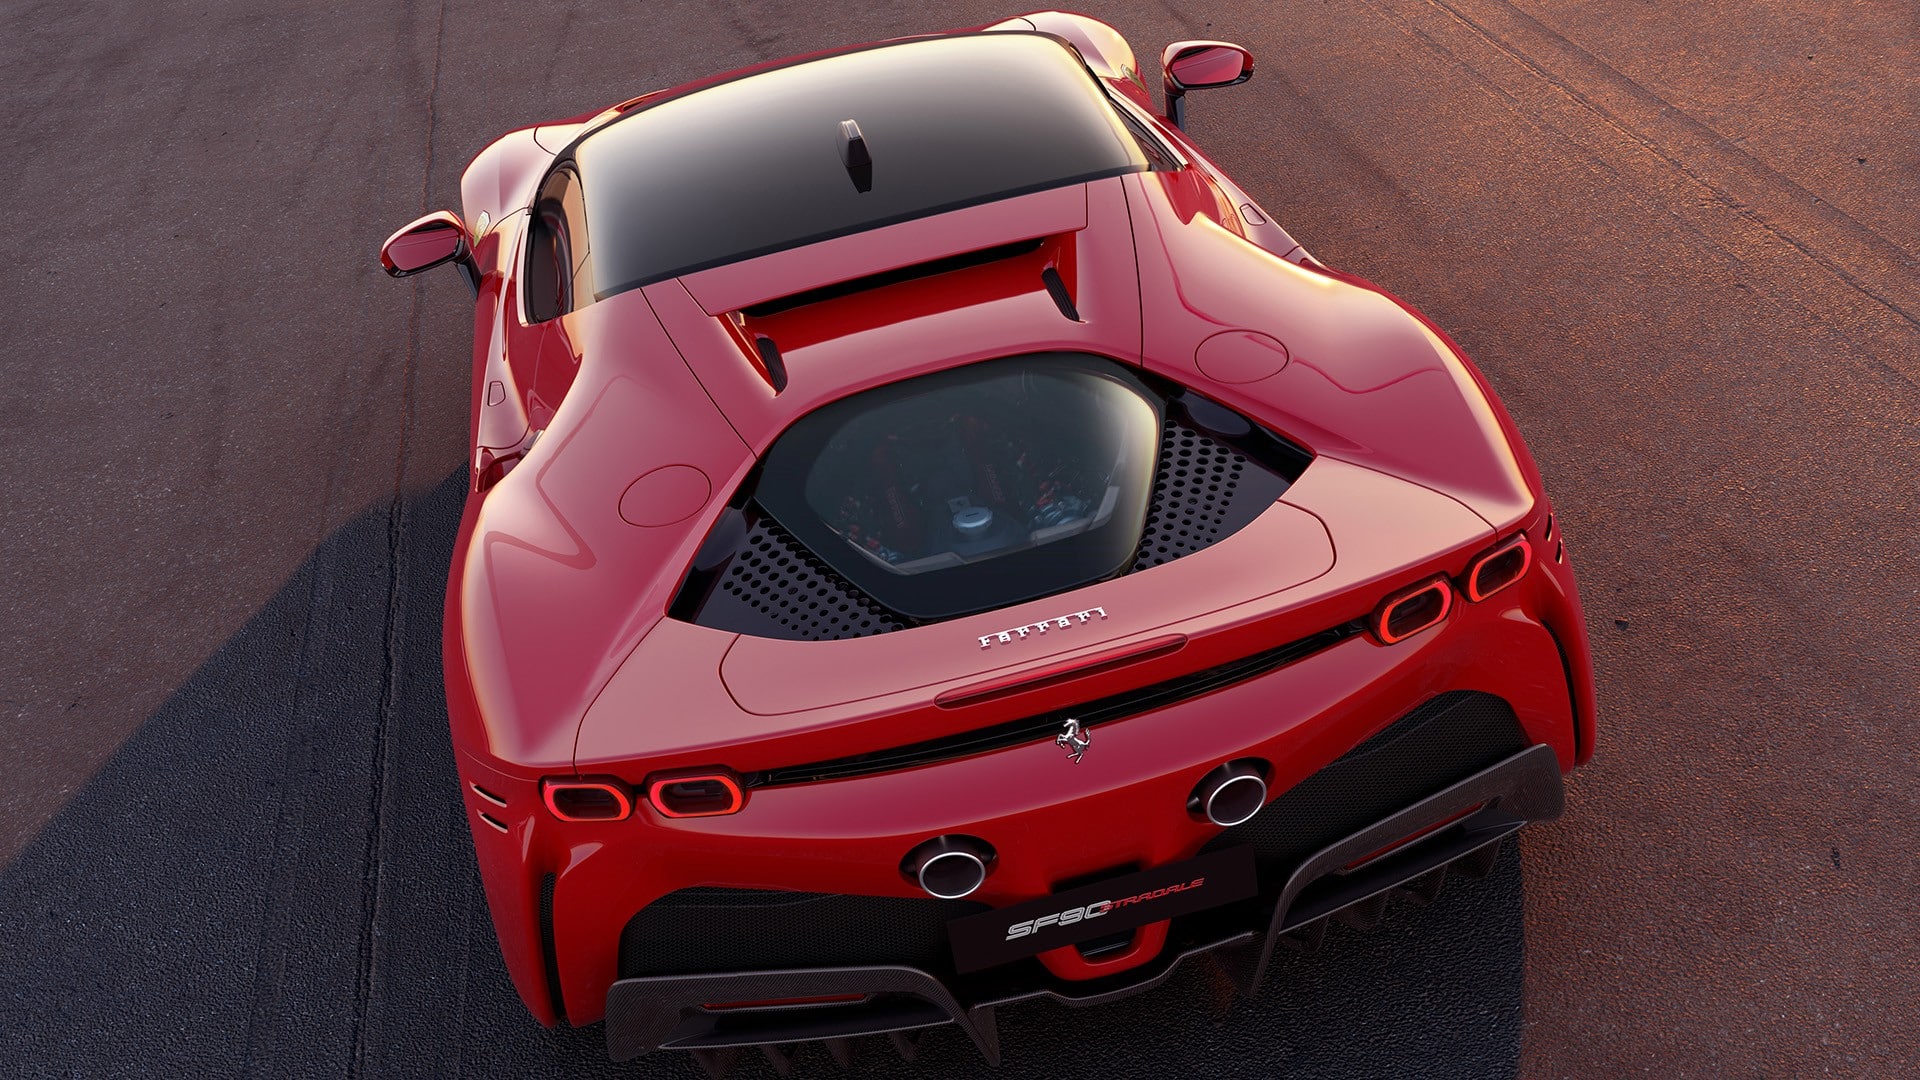 Fabricantes como Ferrari tienden a poner motores centrales 